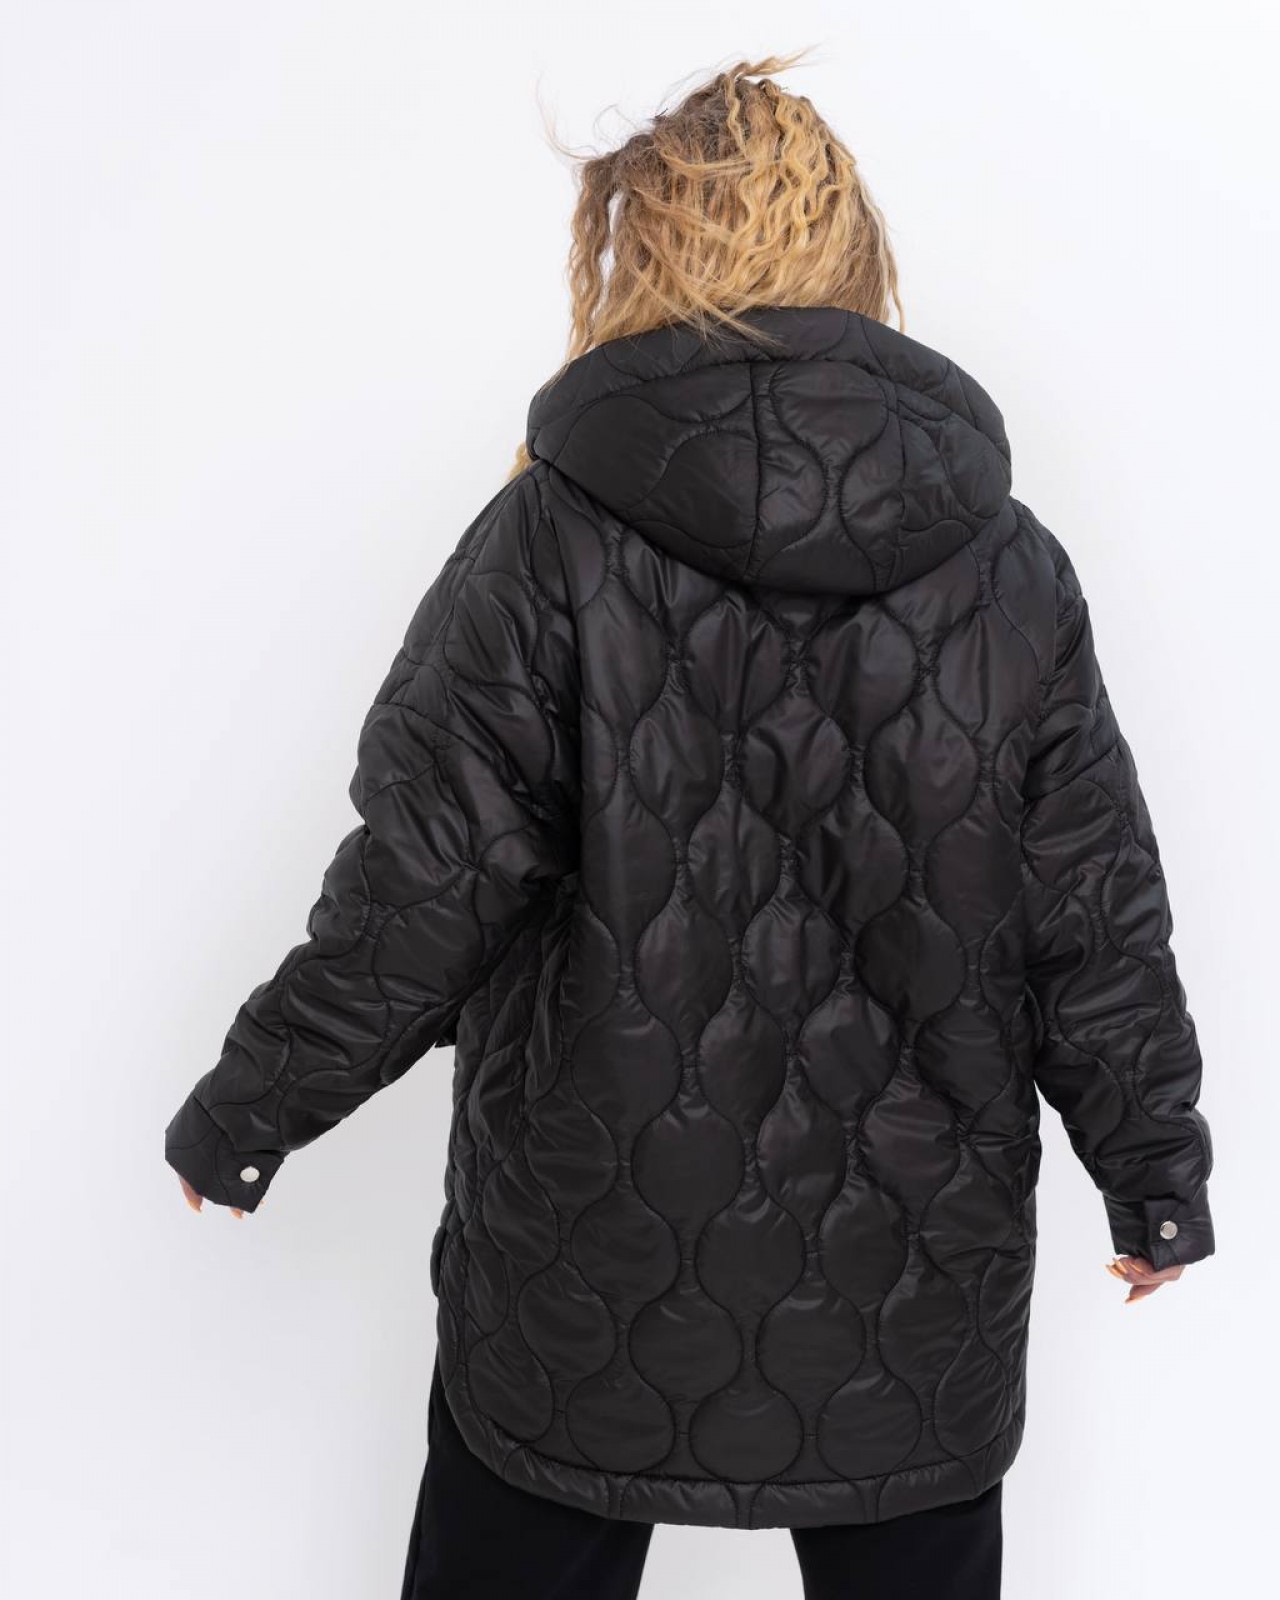 Жіноча куртка з поясом колір чорний р.50/52 440912